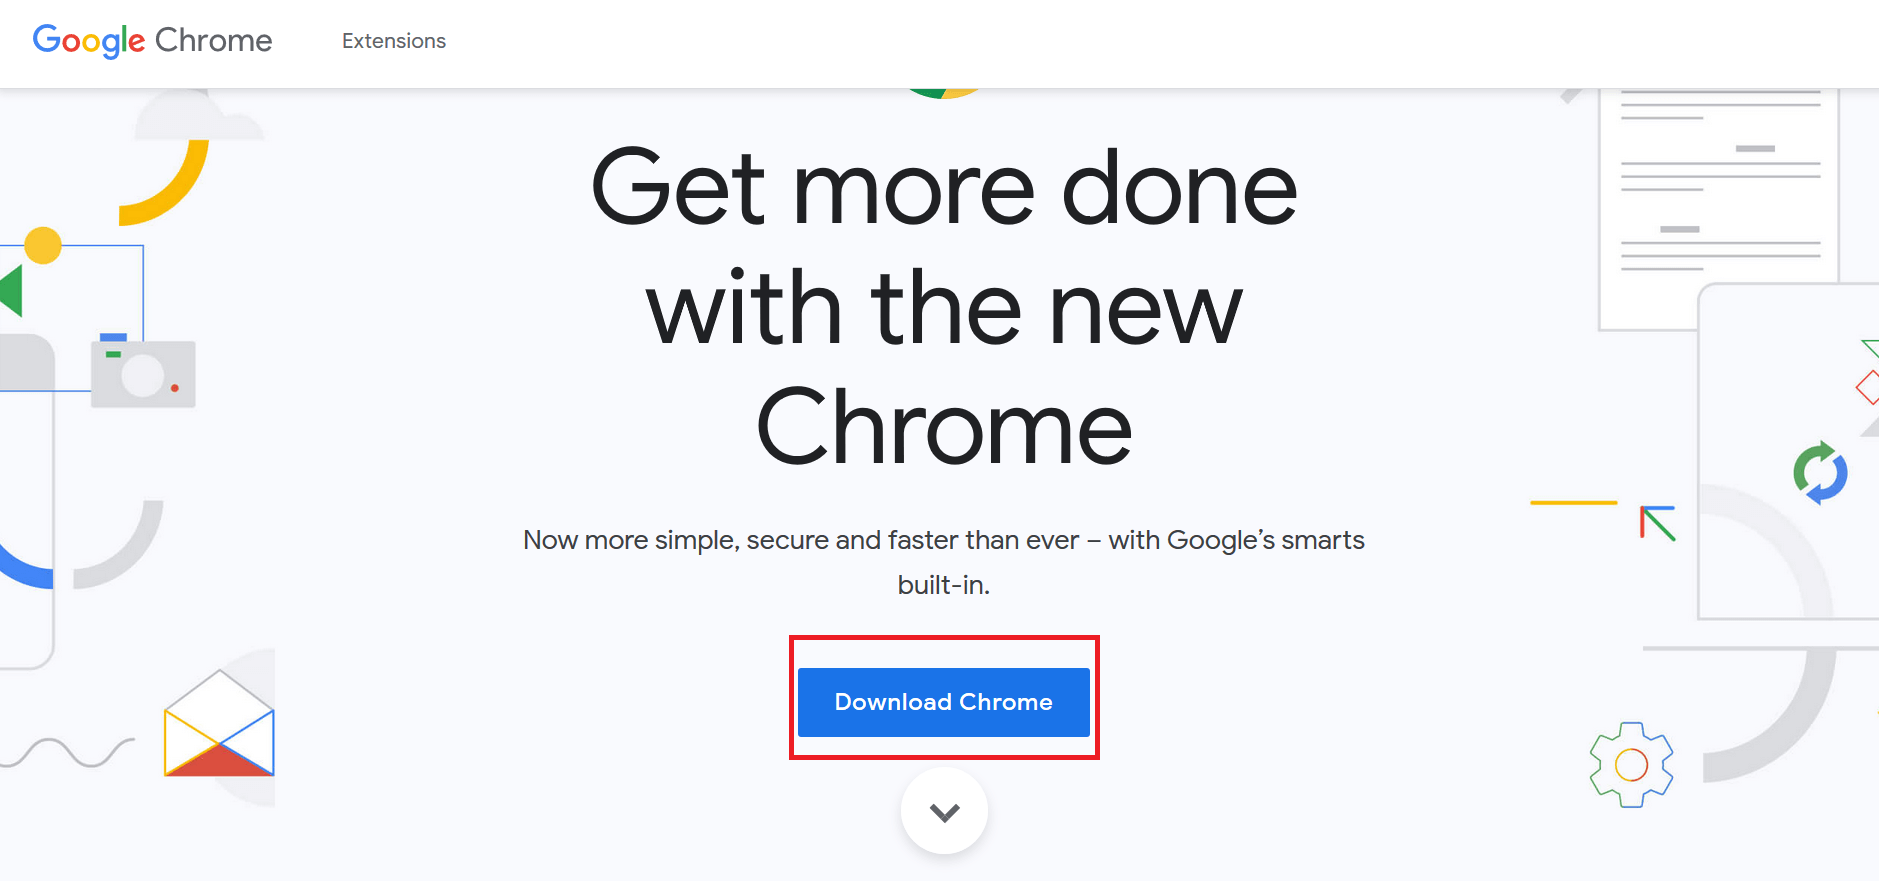 haga clic en el botón Descargar Chrome para descargar la última versión del instalador de Chrome.